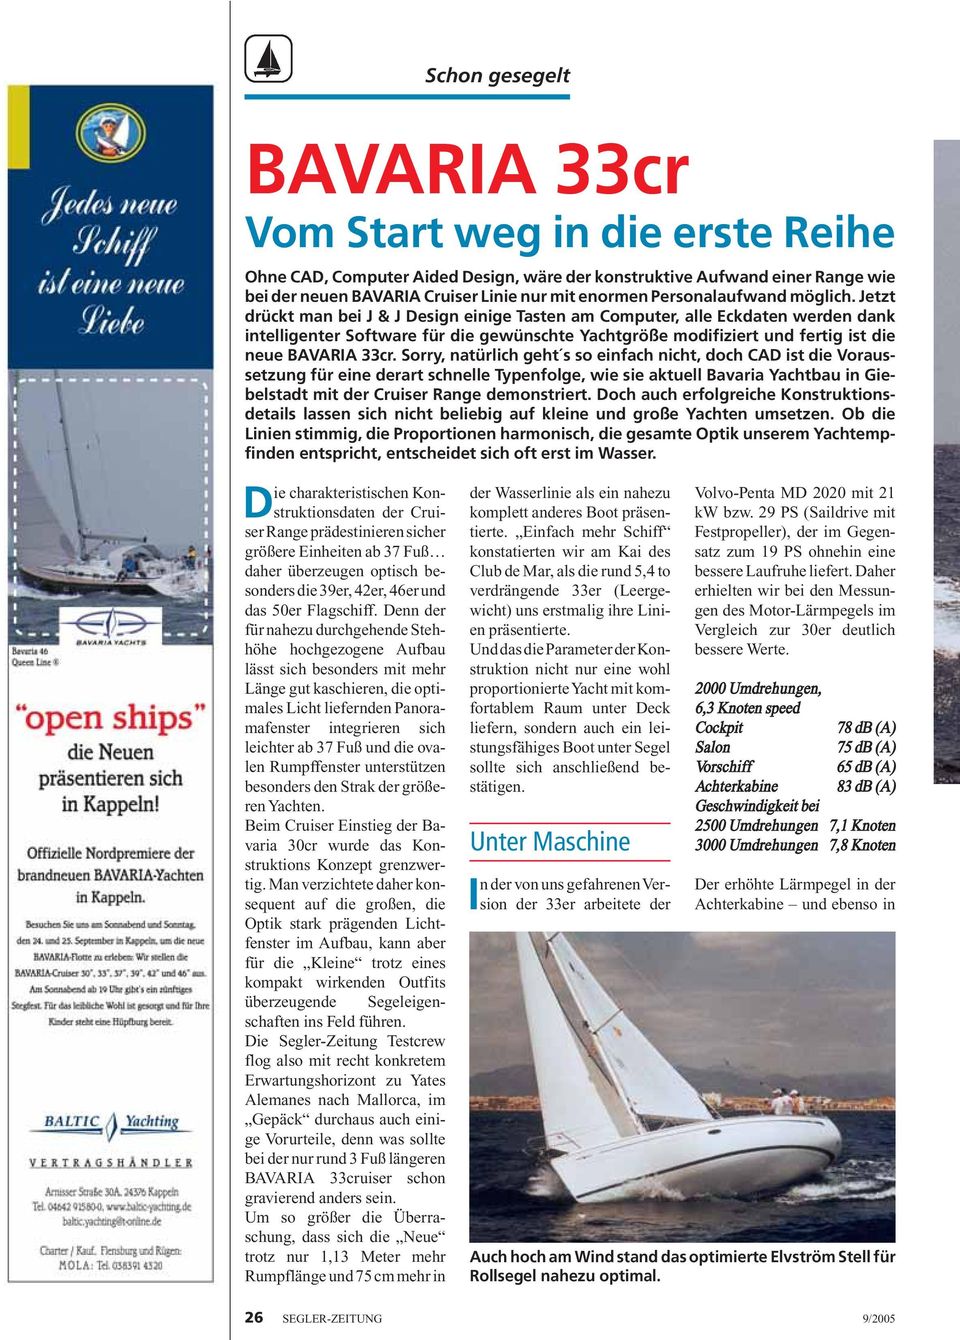 Sorry, natürlich geht s so einfach nicht, doch CAD ist die Voraussetzung für eine derart schnelle Typenfolge, wie sie aktuell Bavaria Yachtbau in Giebelstadt mit der Cruiser Range demonstriert.